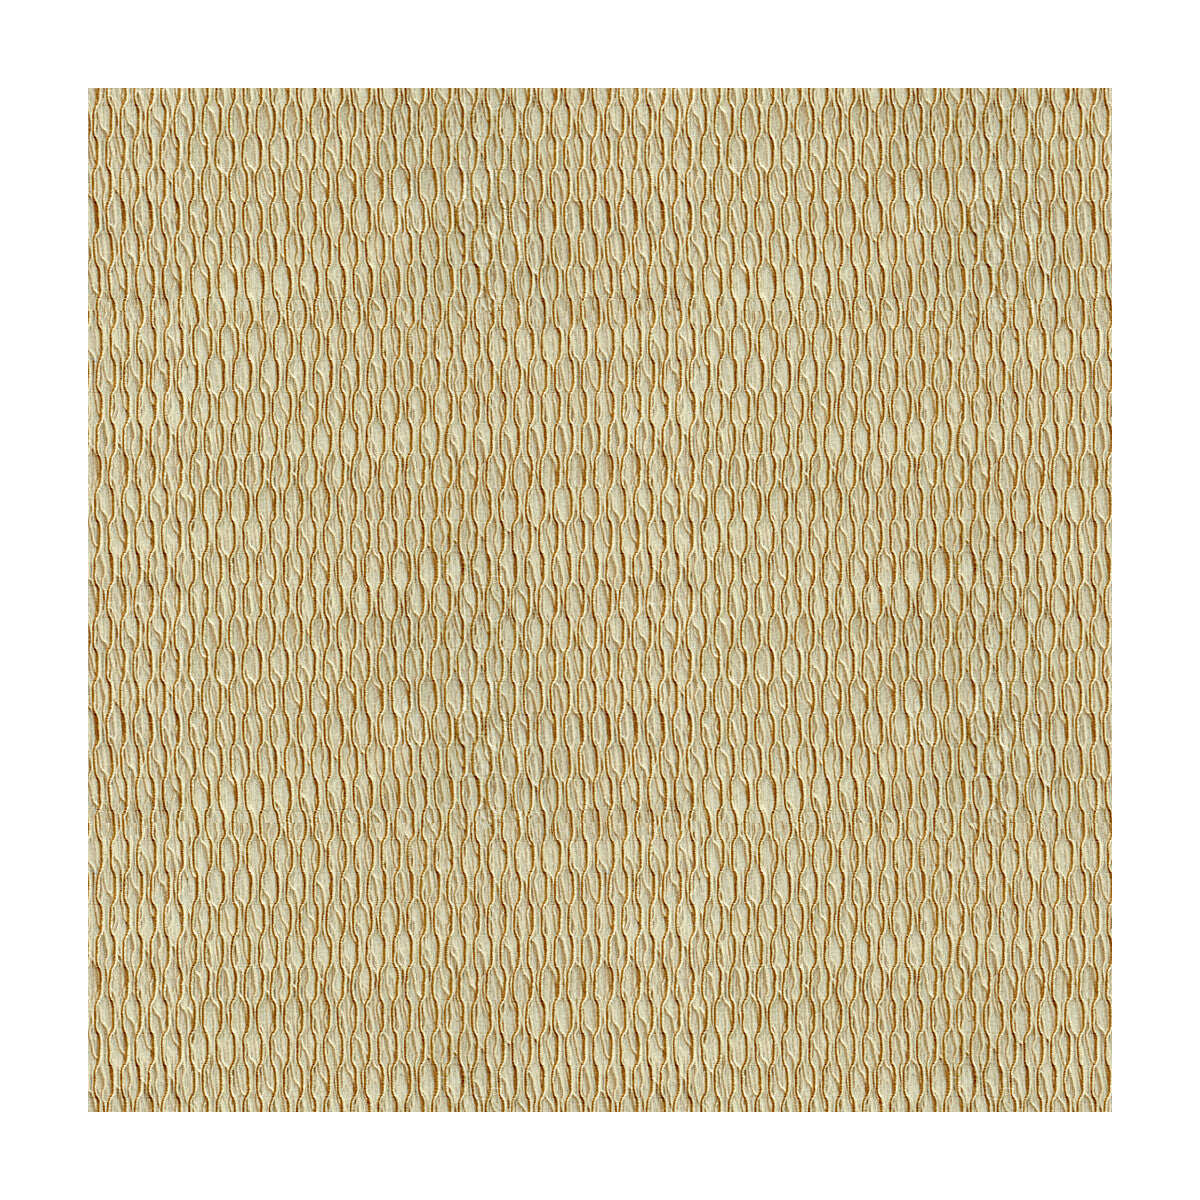 Kravet Basics fabric in 4105-1616 color - pattern 4105.1616.0 - by Kravet Basics